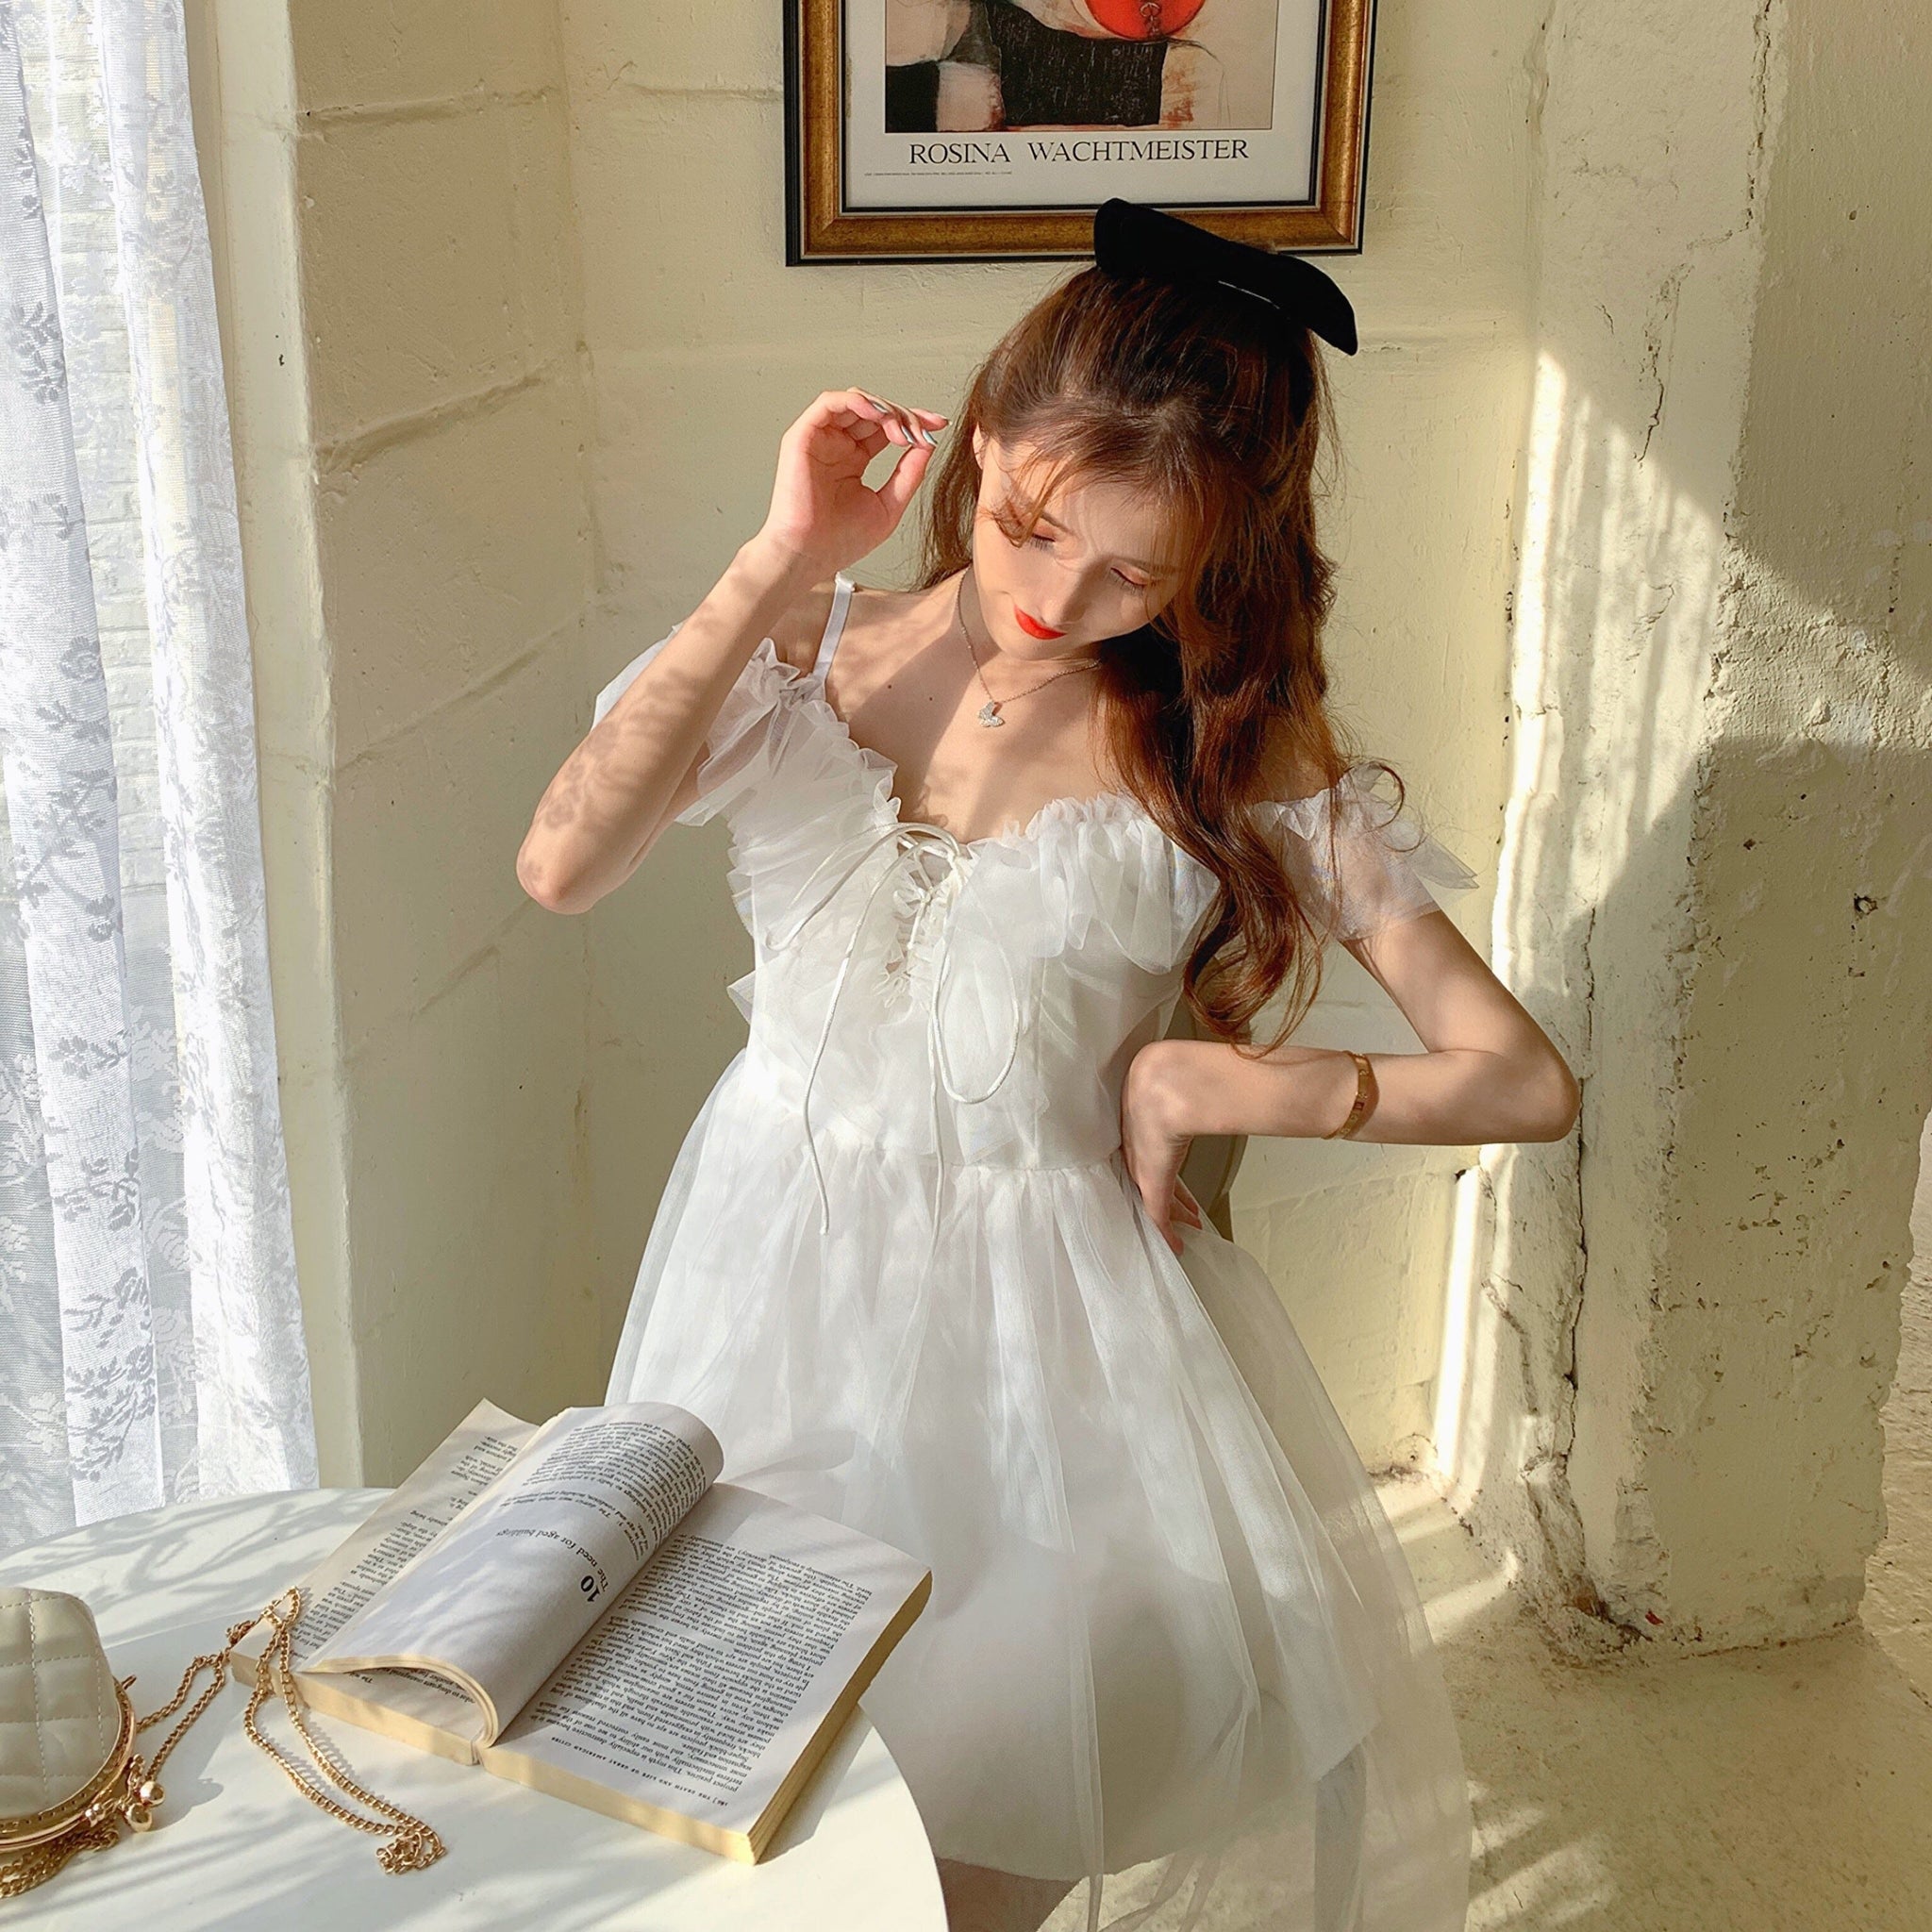 Misty Wish White Tulle Fairy Mini Dress 